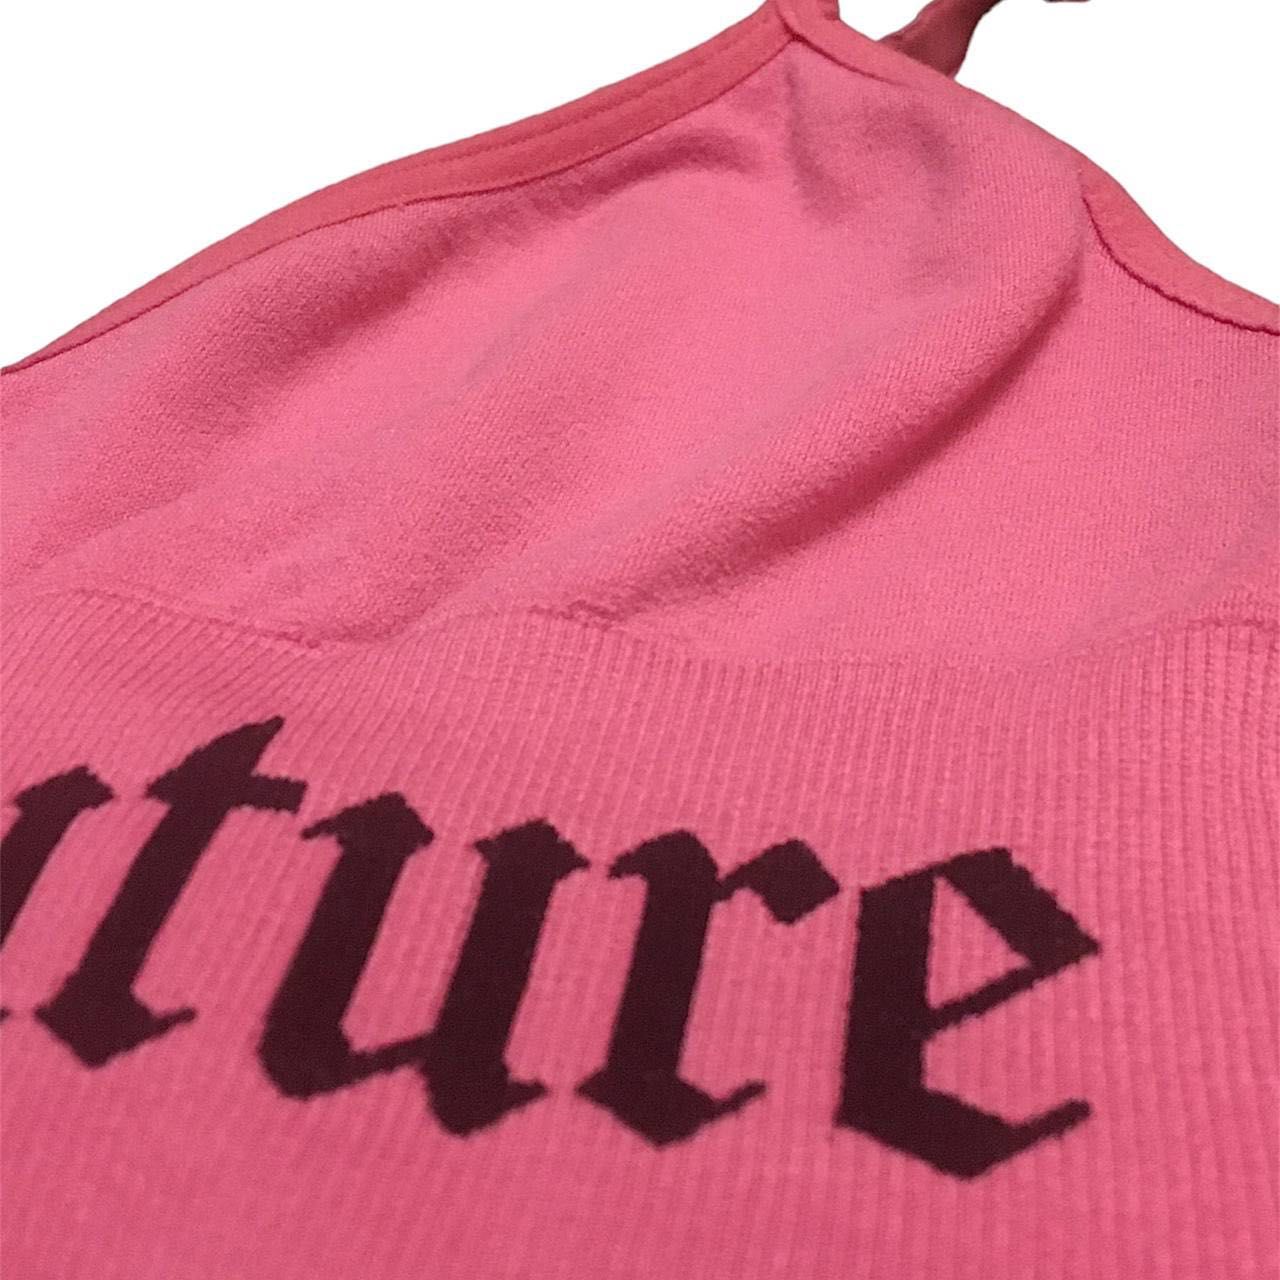 Juicy Couture Джуси Кутюр вінтажний рожевий бюстгальтер бра спортивний